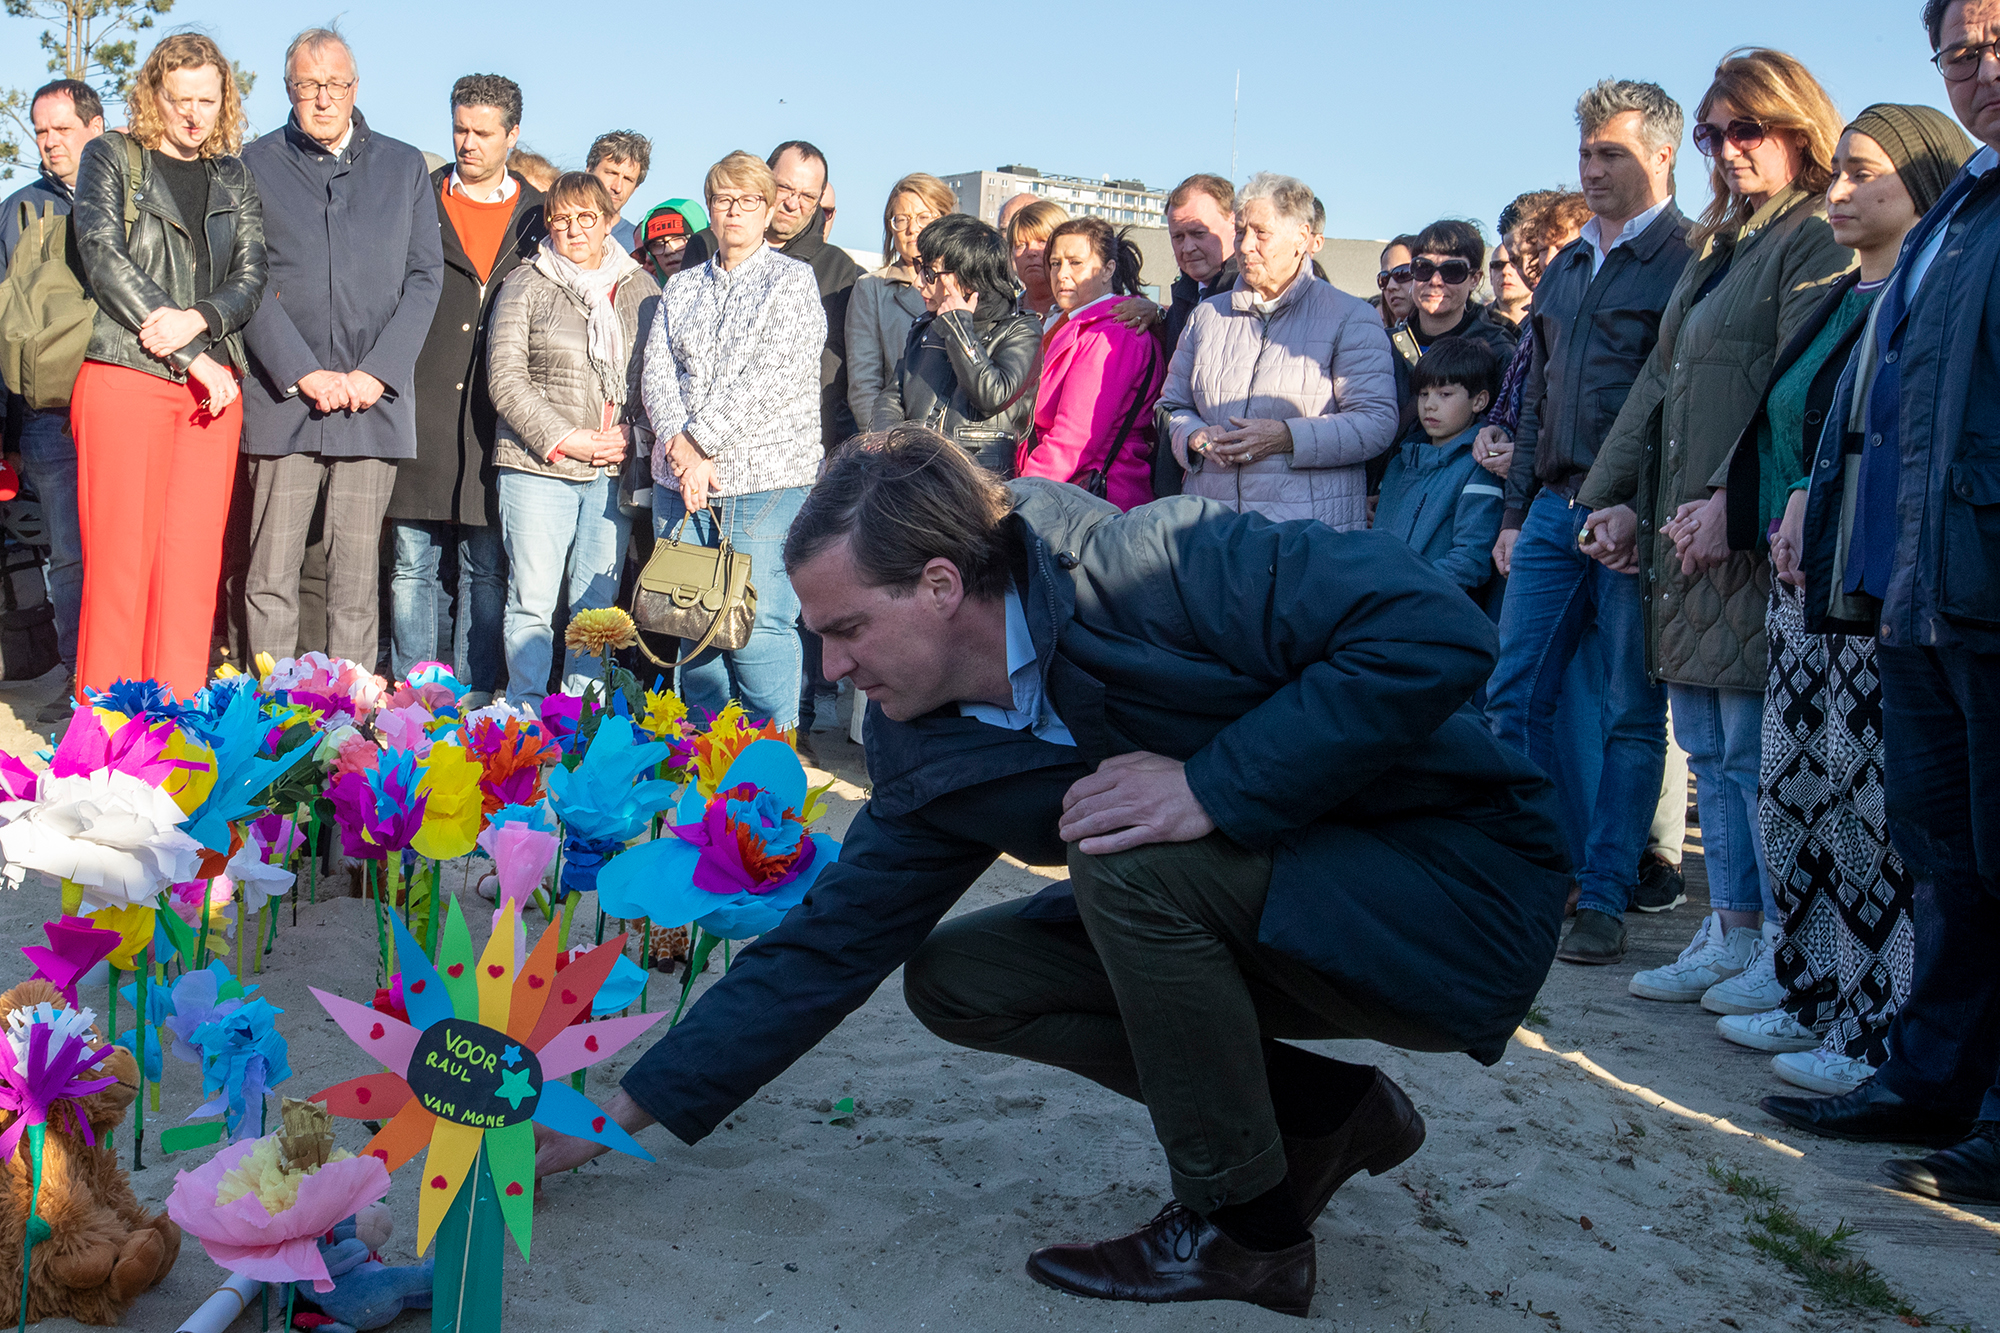 Der Bürgermeister von Gent, Mathias De Clercq, bei der Gedenkfeier für den neunjährigen Raul am Houtdok-Hafen in Gent (Bild: Nicolas Maeterlinck/Belga)